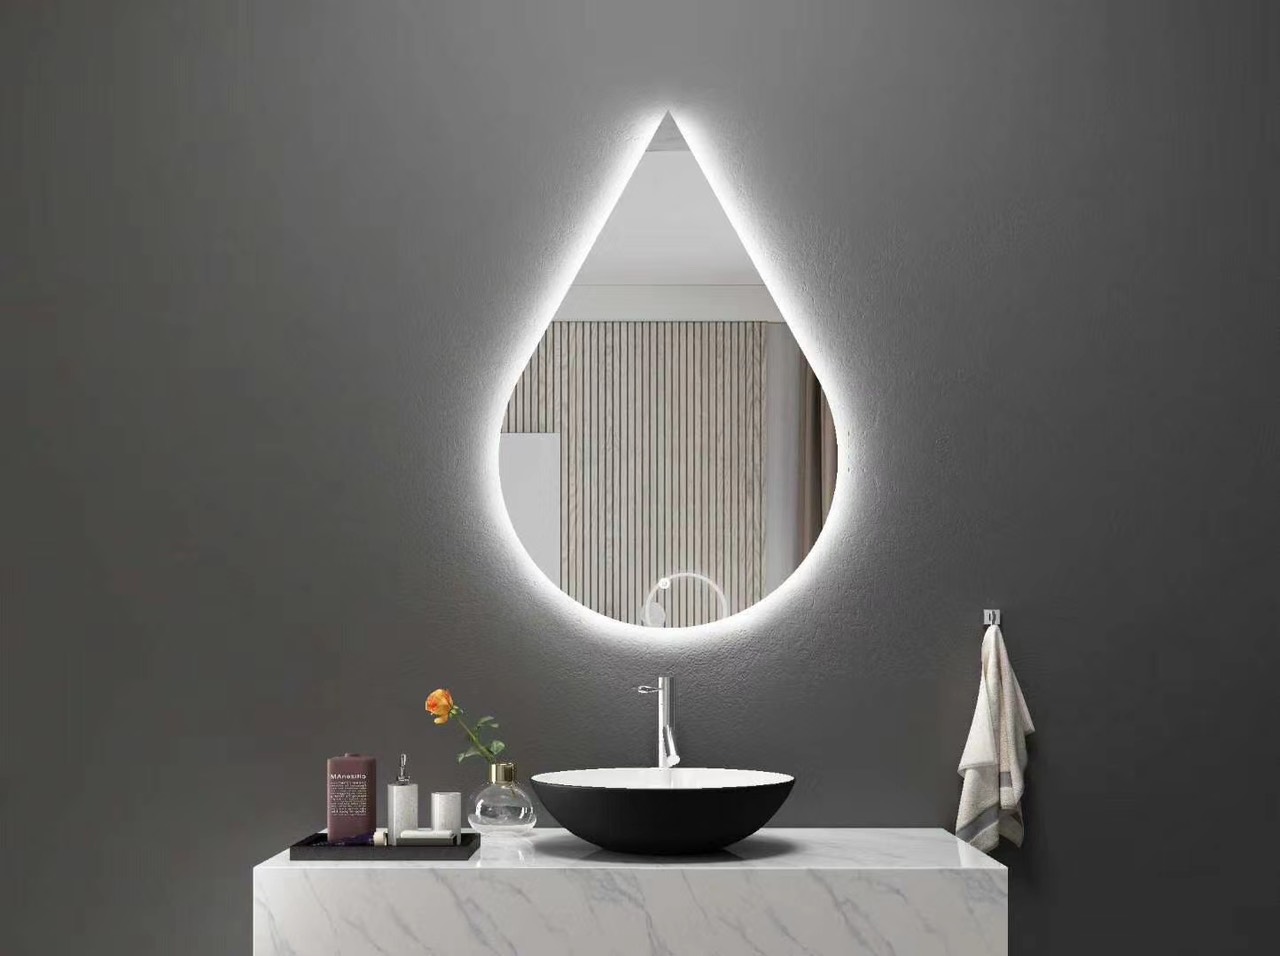 Sử dụng gương đèn LED cho các căn nhà sẽ khiến không gian phòng tắm trở nên sang trọng và hiện đại. Bạn luôn tìm kiếm những sản phẩm mang tính đột phá và tinh tế? Gương đèn LED sẽ là một lựa chọn hoàn hảo cho bạn.